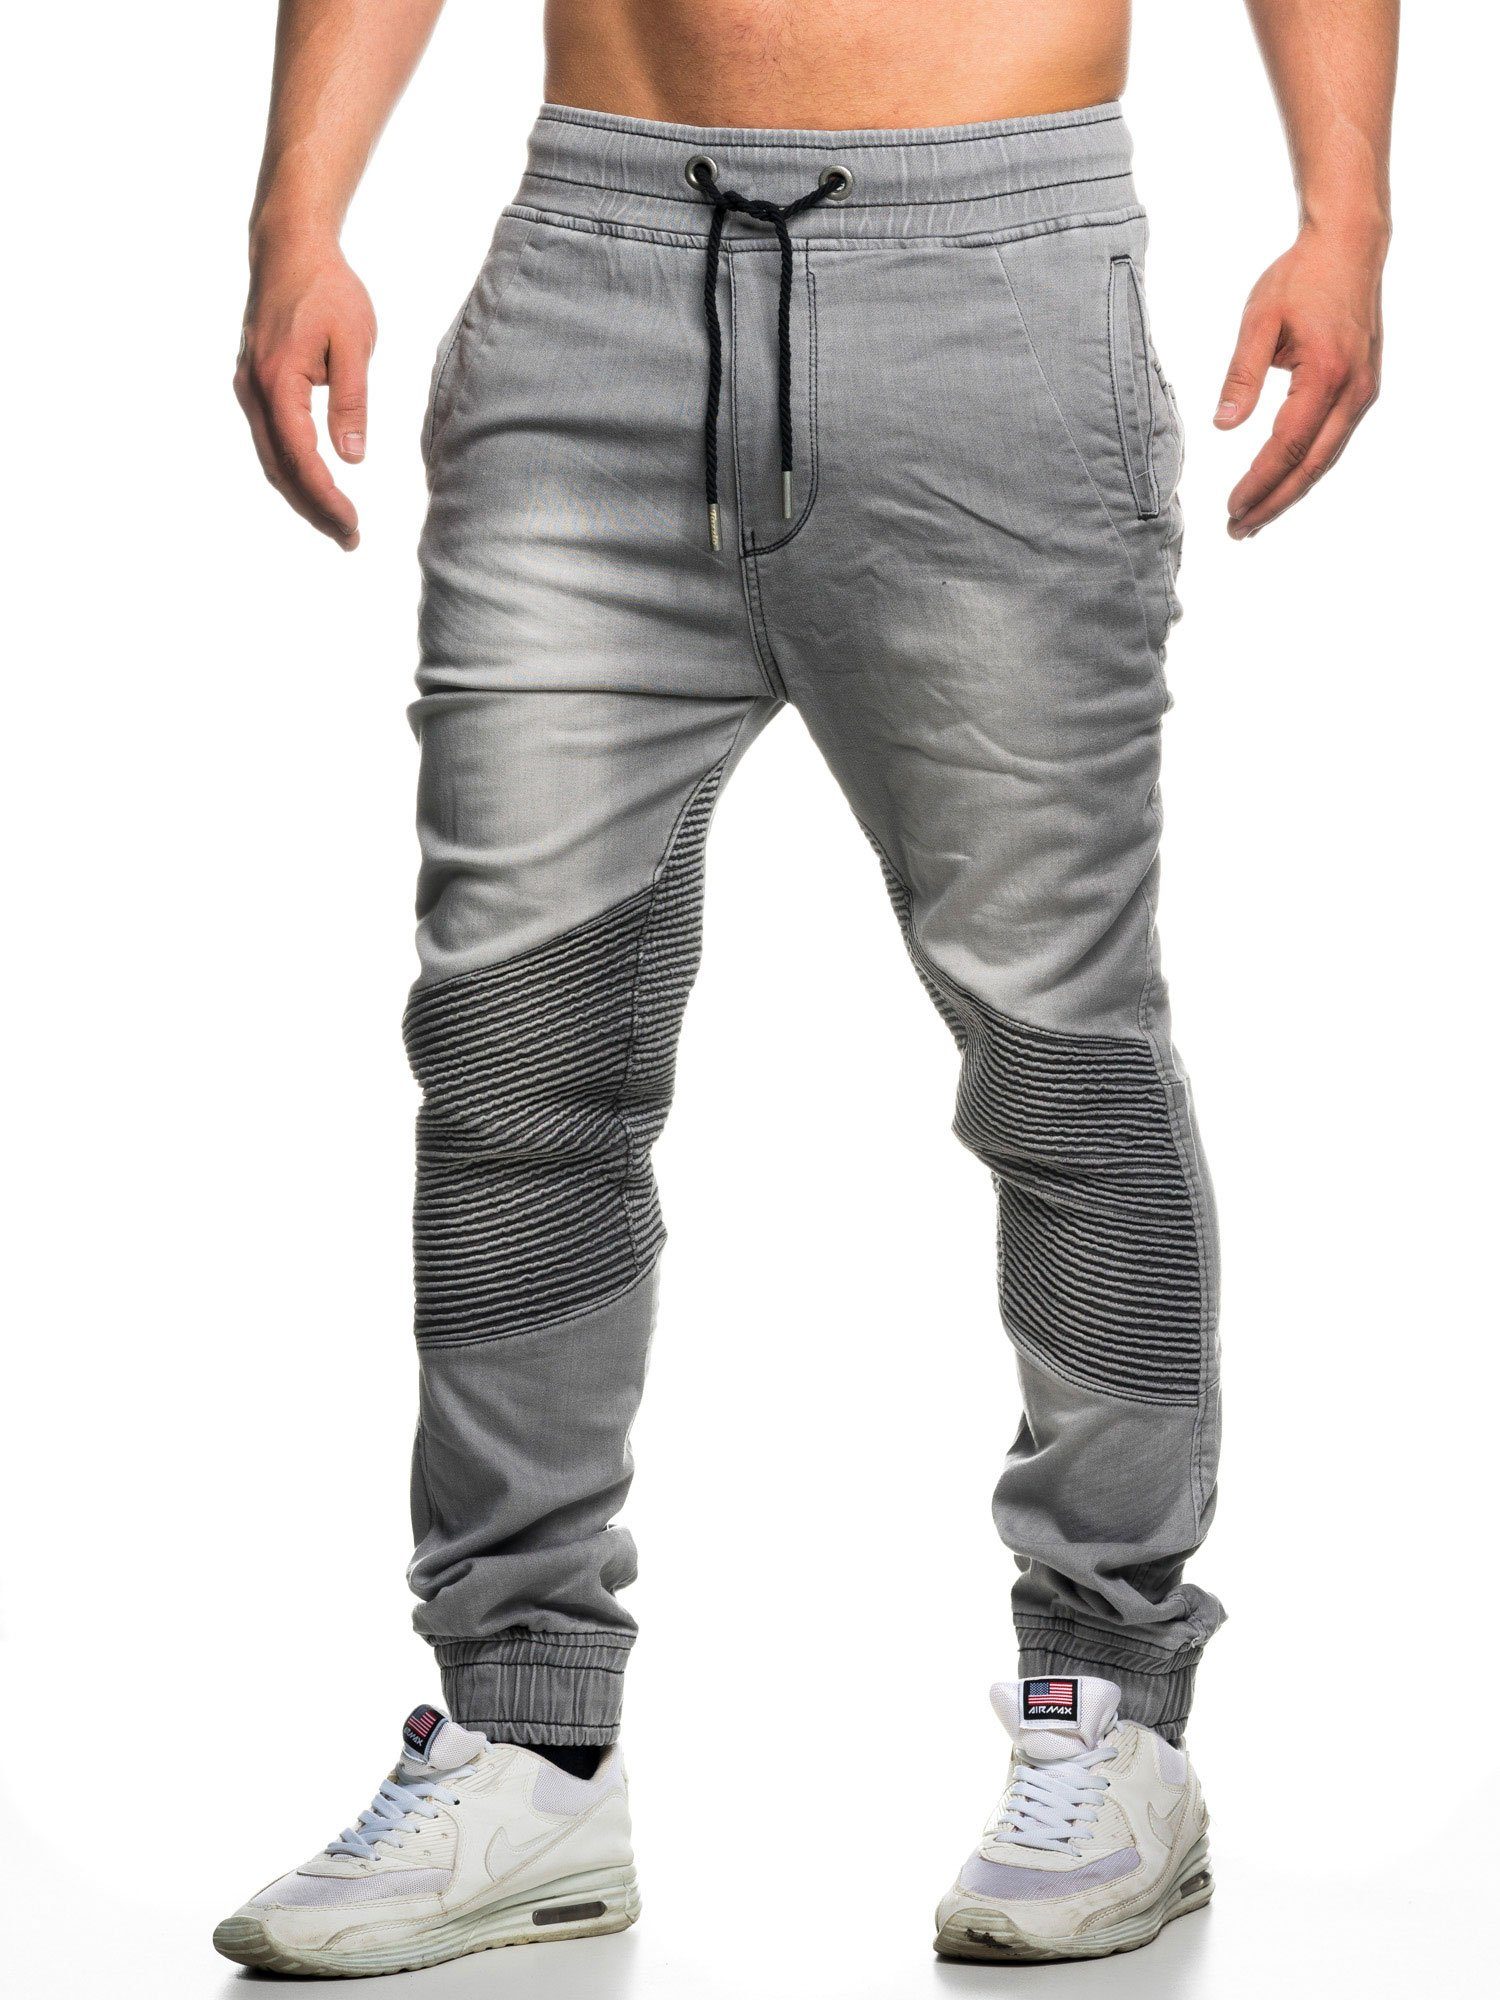 Straight-Jeans Sweat 16505 Biker-Look & grau Tazzio Jogger-Stil Hose im